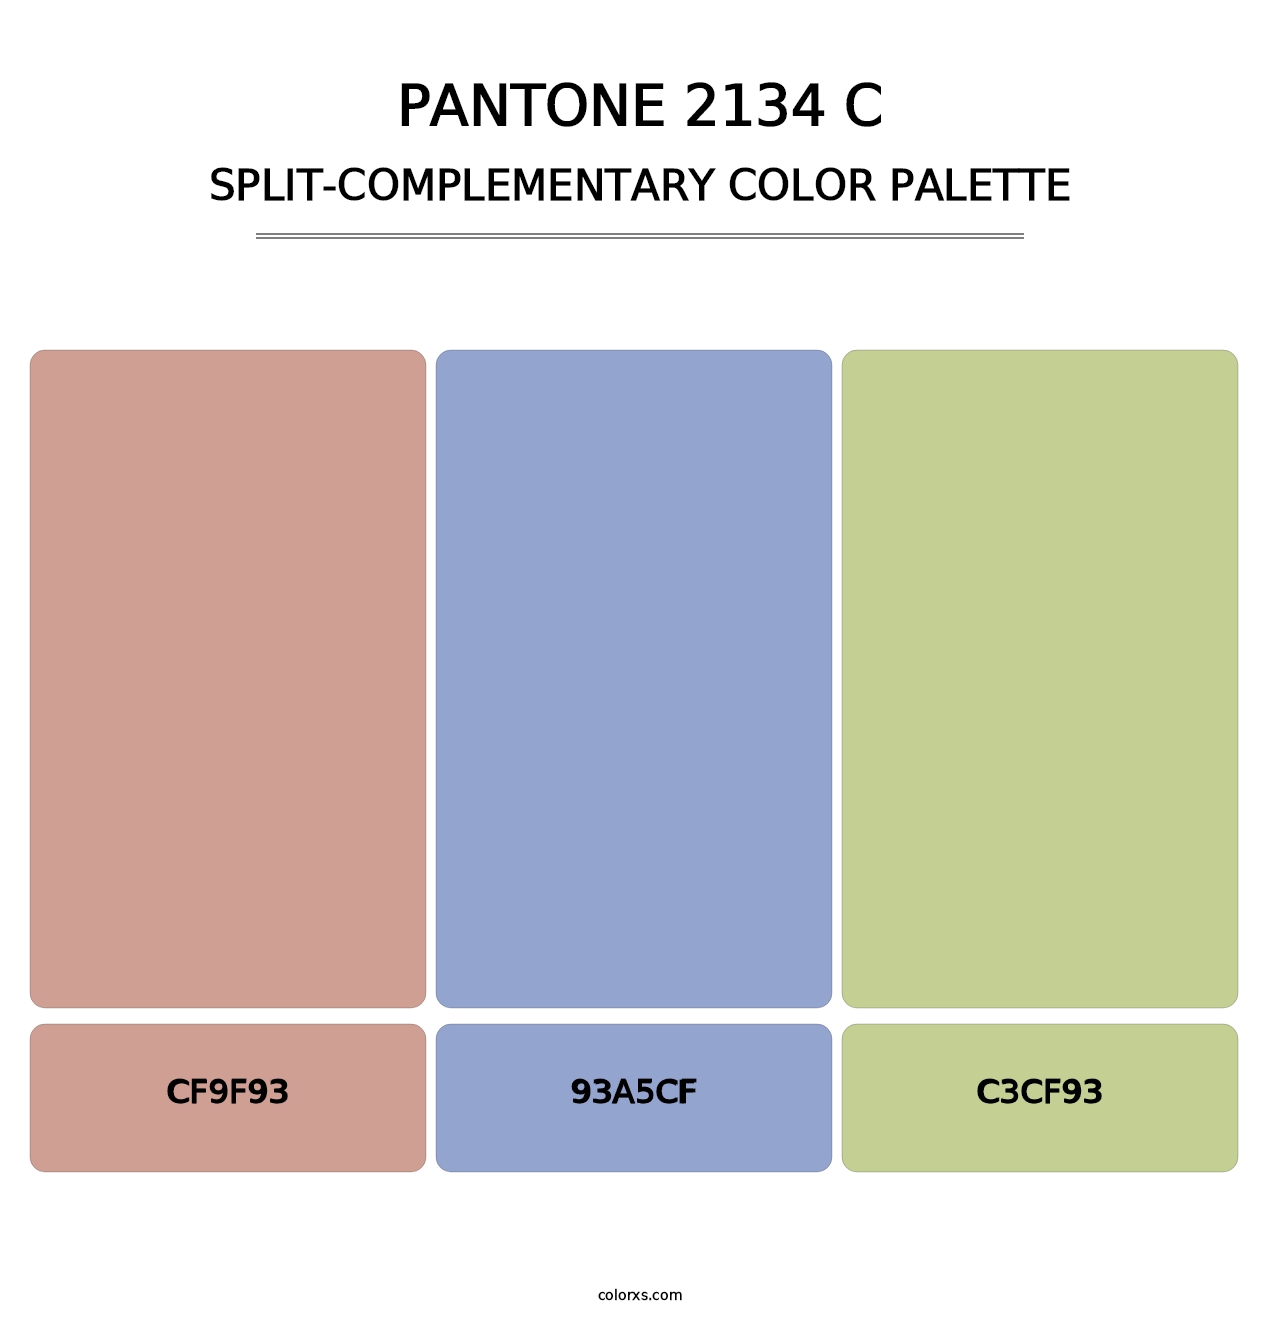 PANTONE 2134 C - Split-Complementary Color Palette